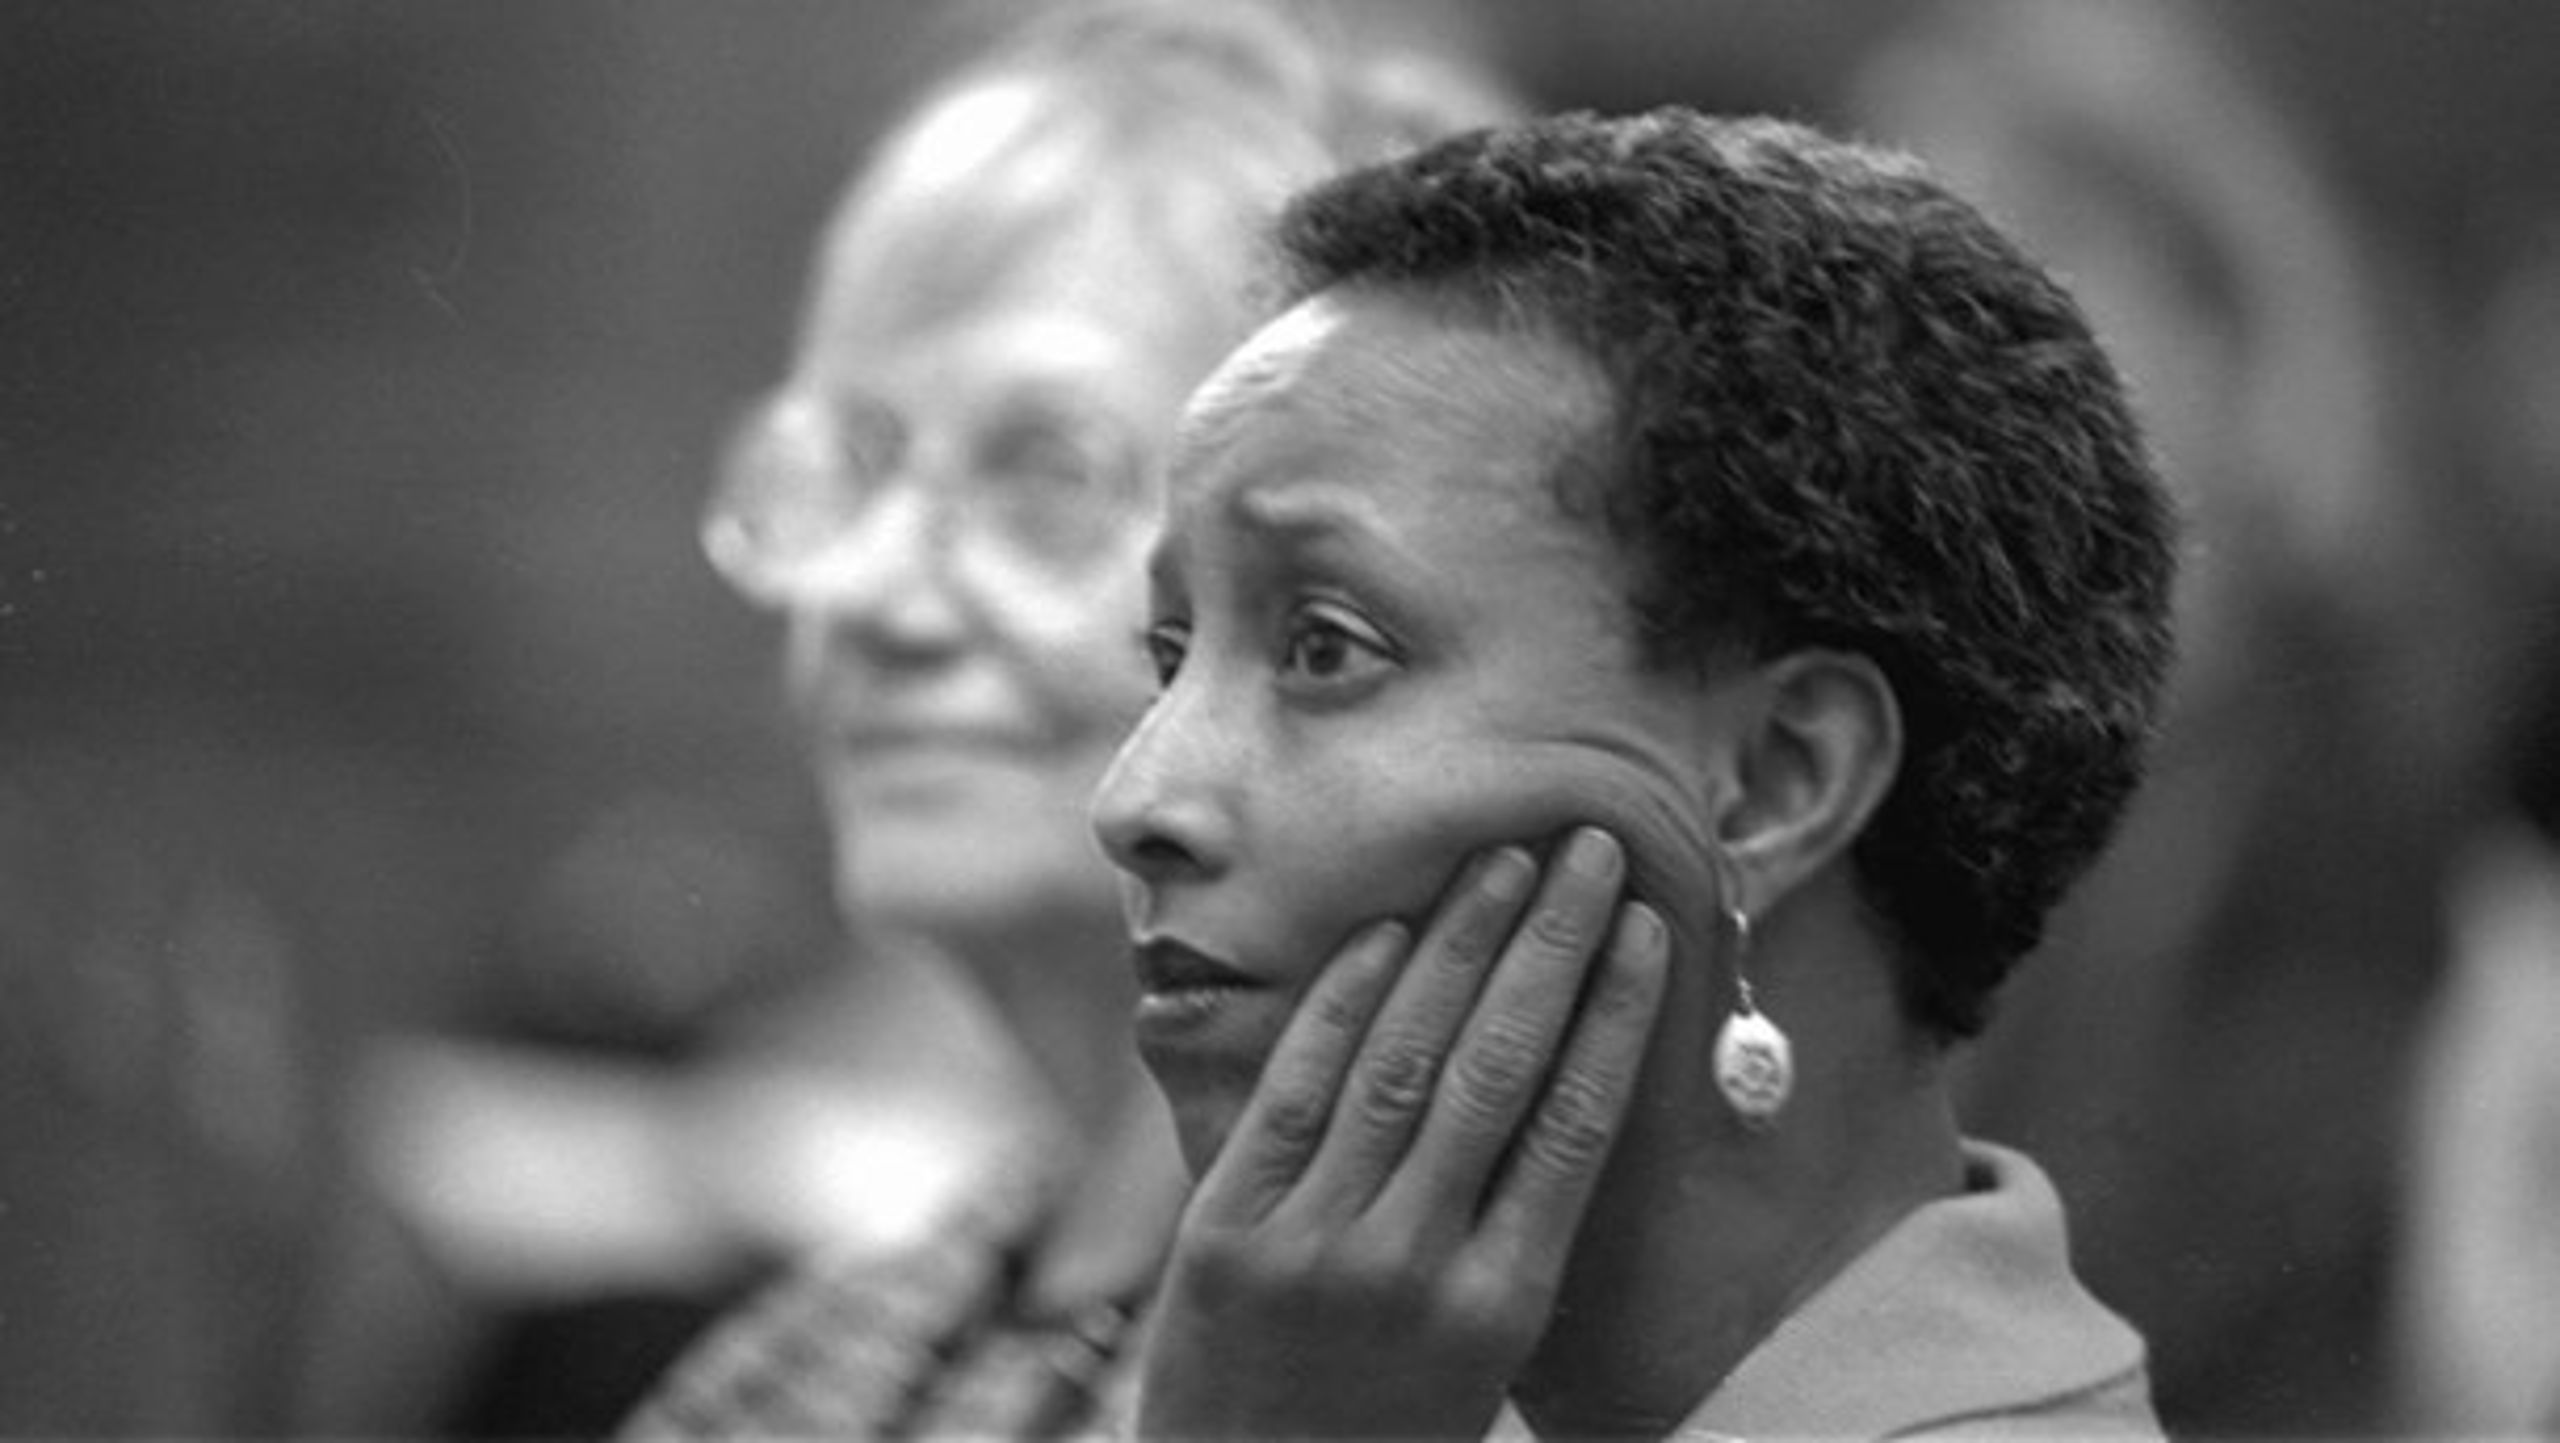 <b>MENNESKETS VÆRD</b>:&nbsp;Den somalisk fødte læge, Fatuma Ali, vil ikke længere finde sig i ”den rabiate Pia Kjærsgaard.”, skriver Fl. Chr. Nielsen.